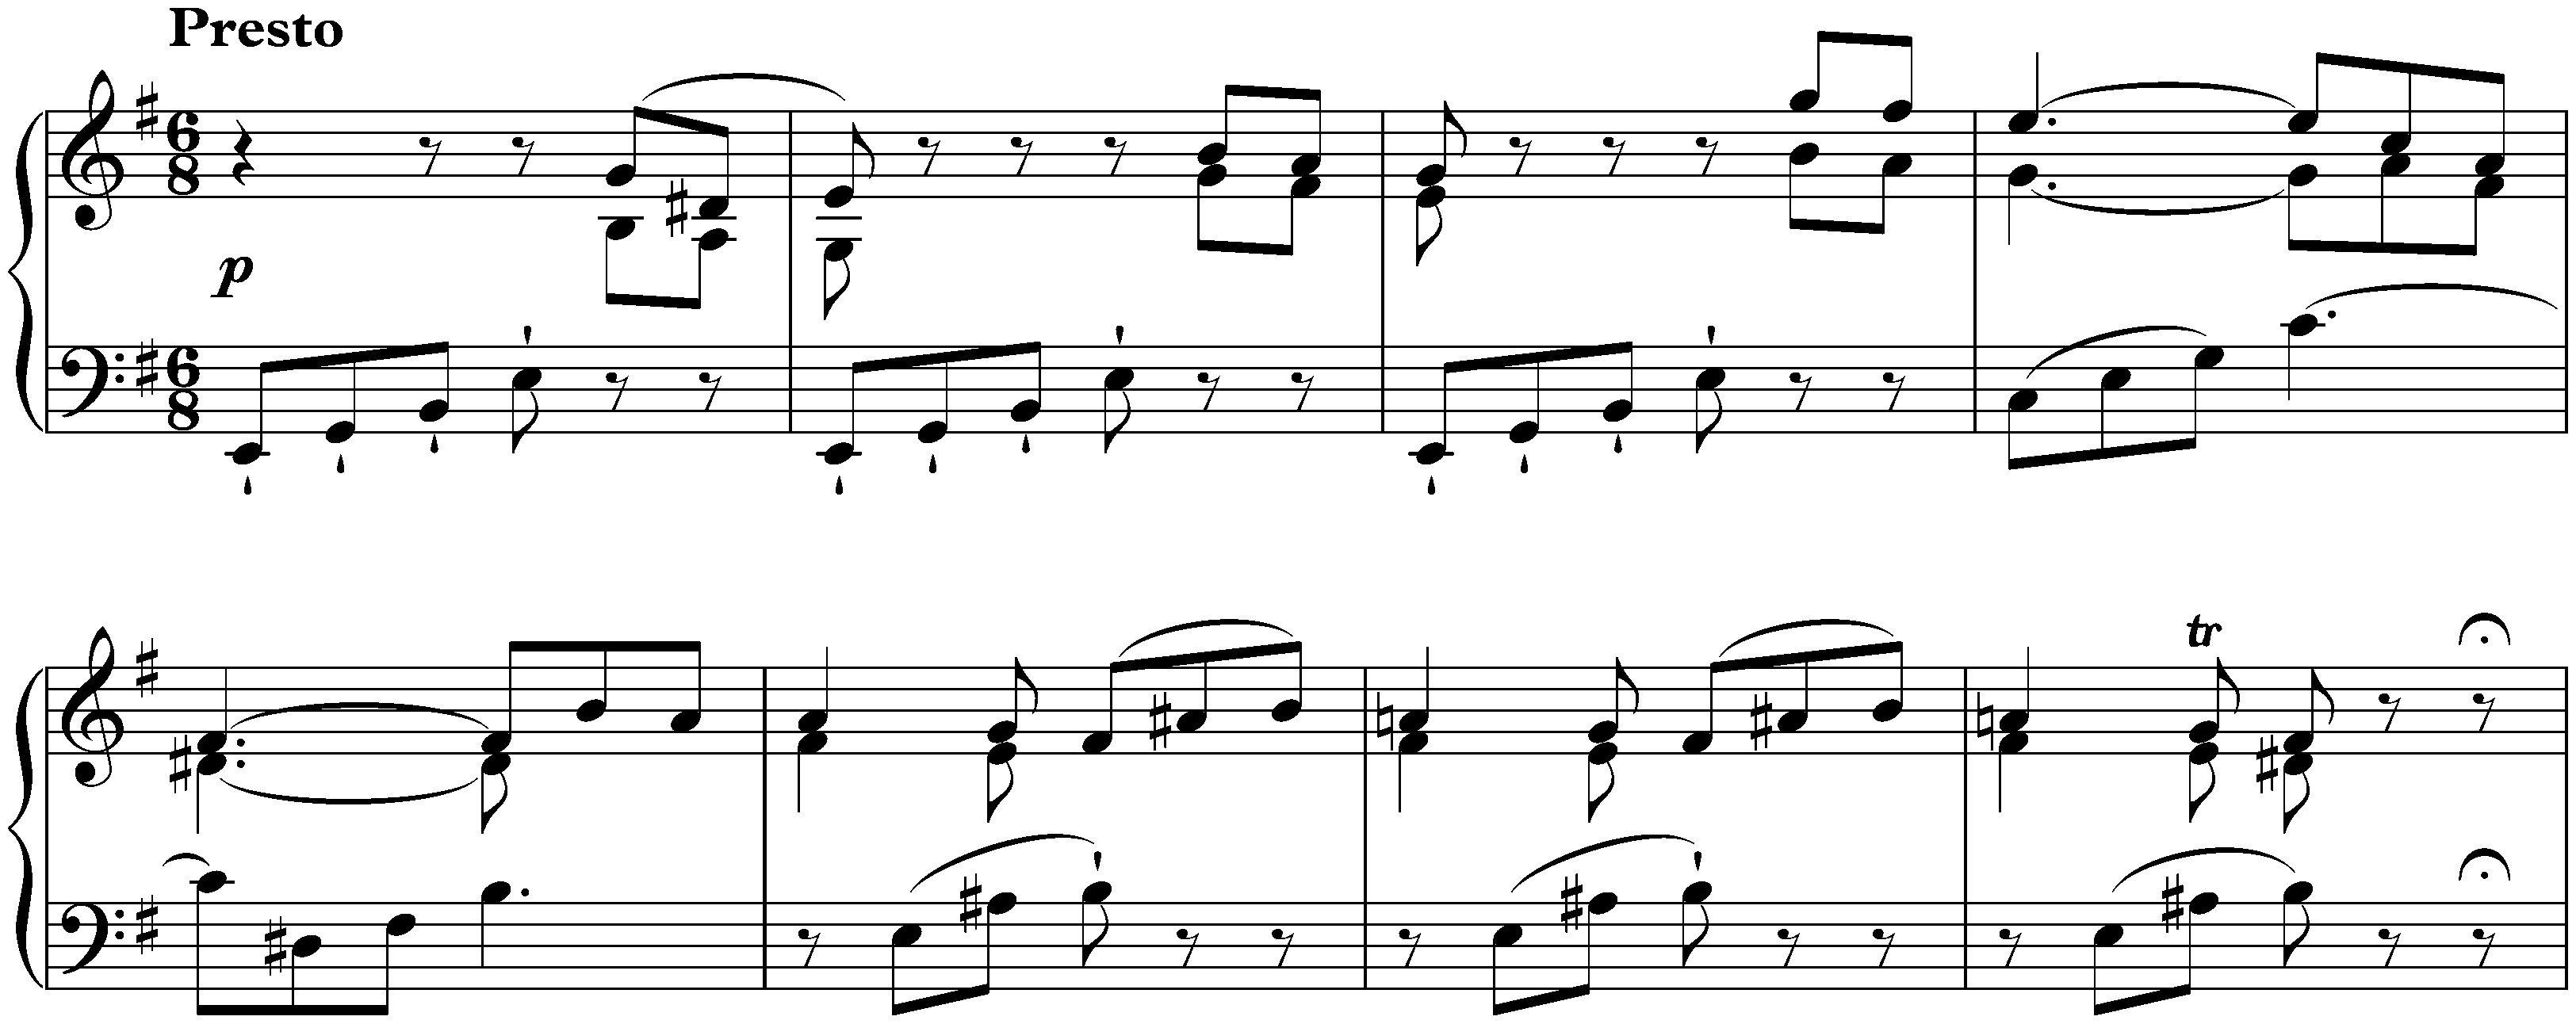 Sonata in E minor, Hob. XVI:34; 1. Presto